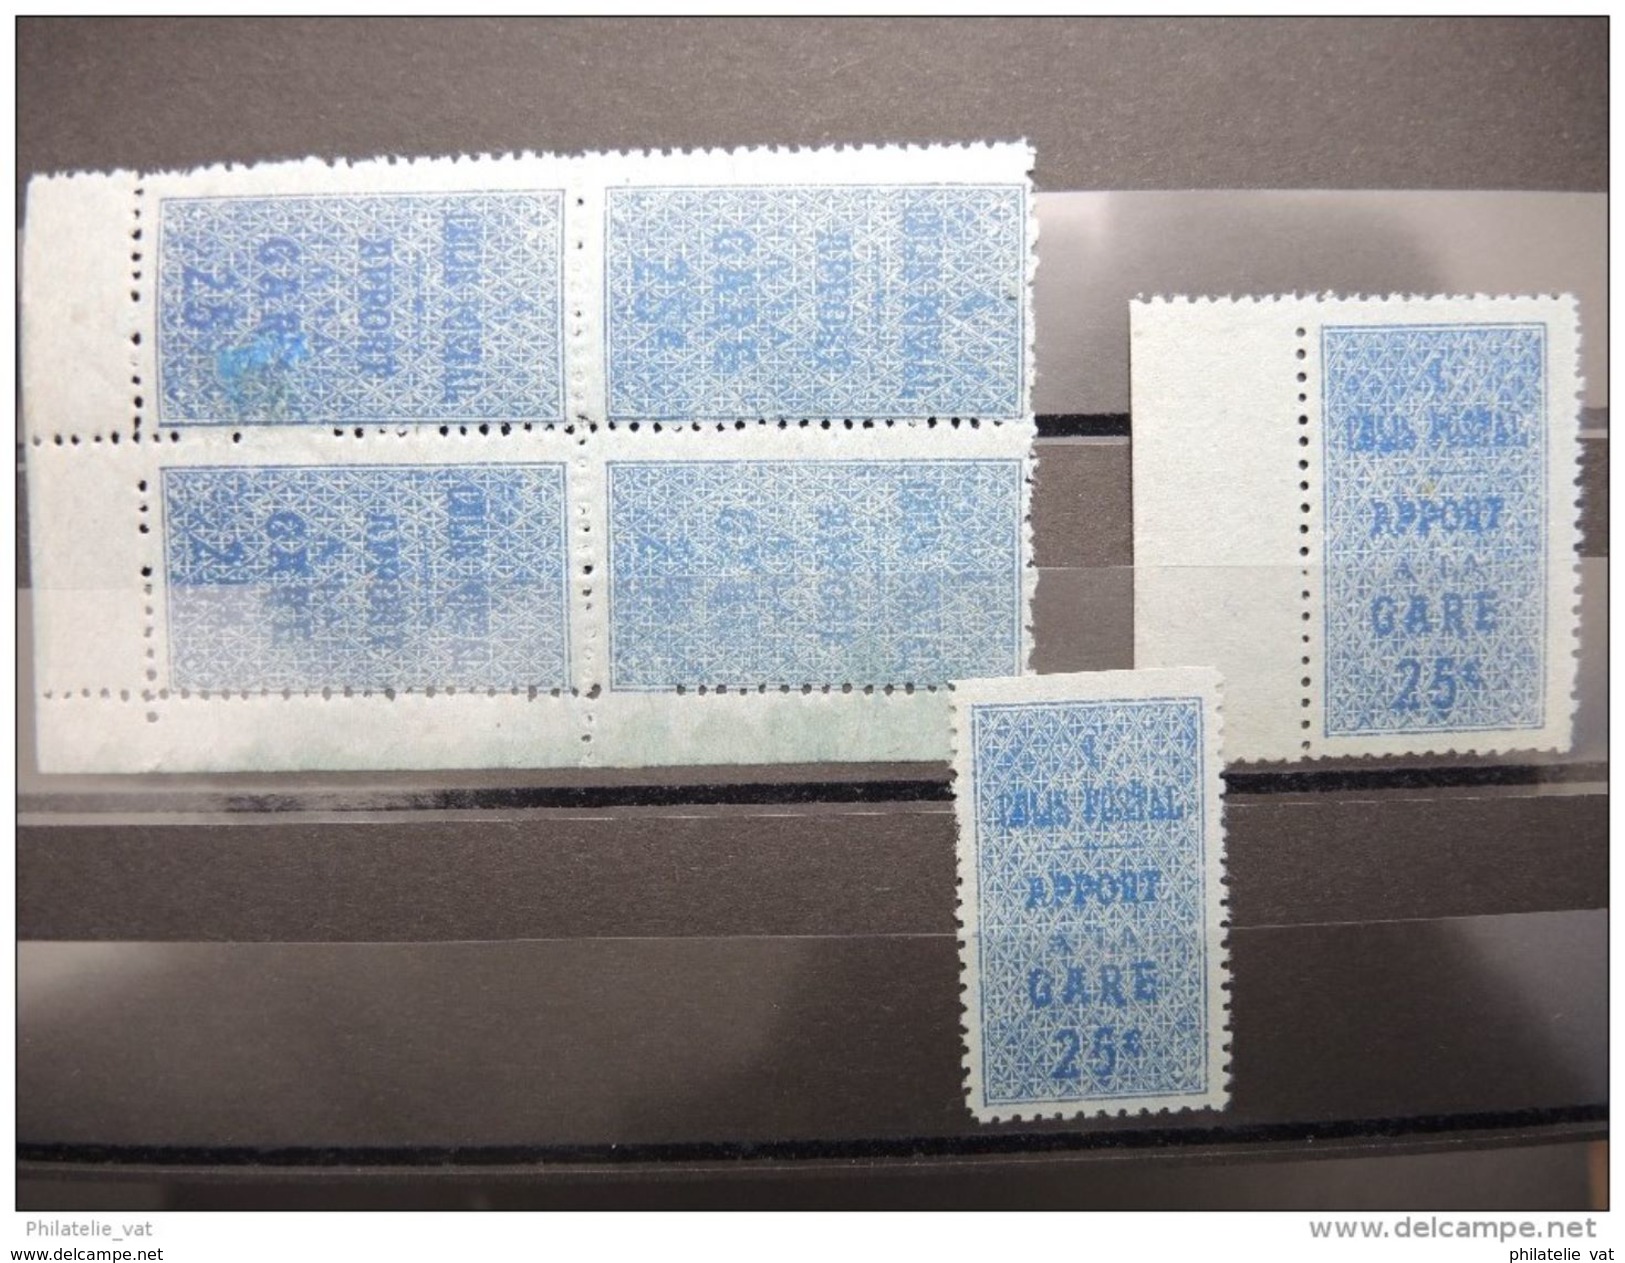 ALGERIE FRANCAISE - Superbe lot de colis postaux - Luxes - 12 plaquettes - Pas courant dans cette qualité - P16301